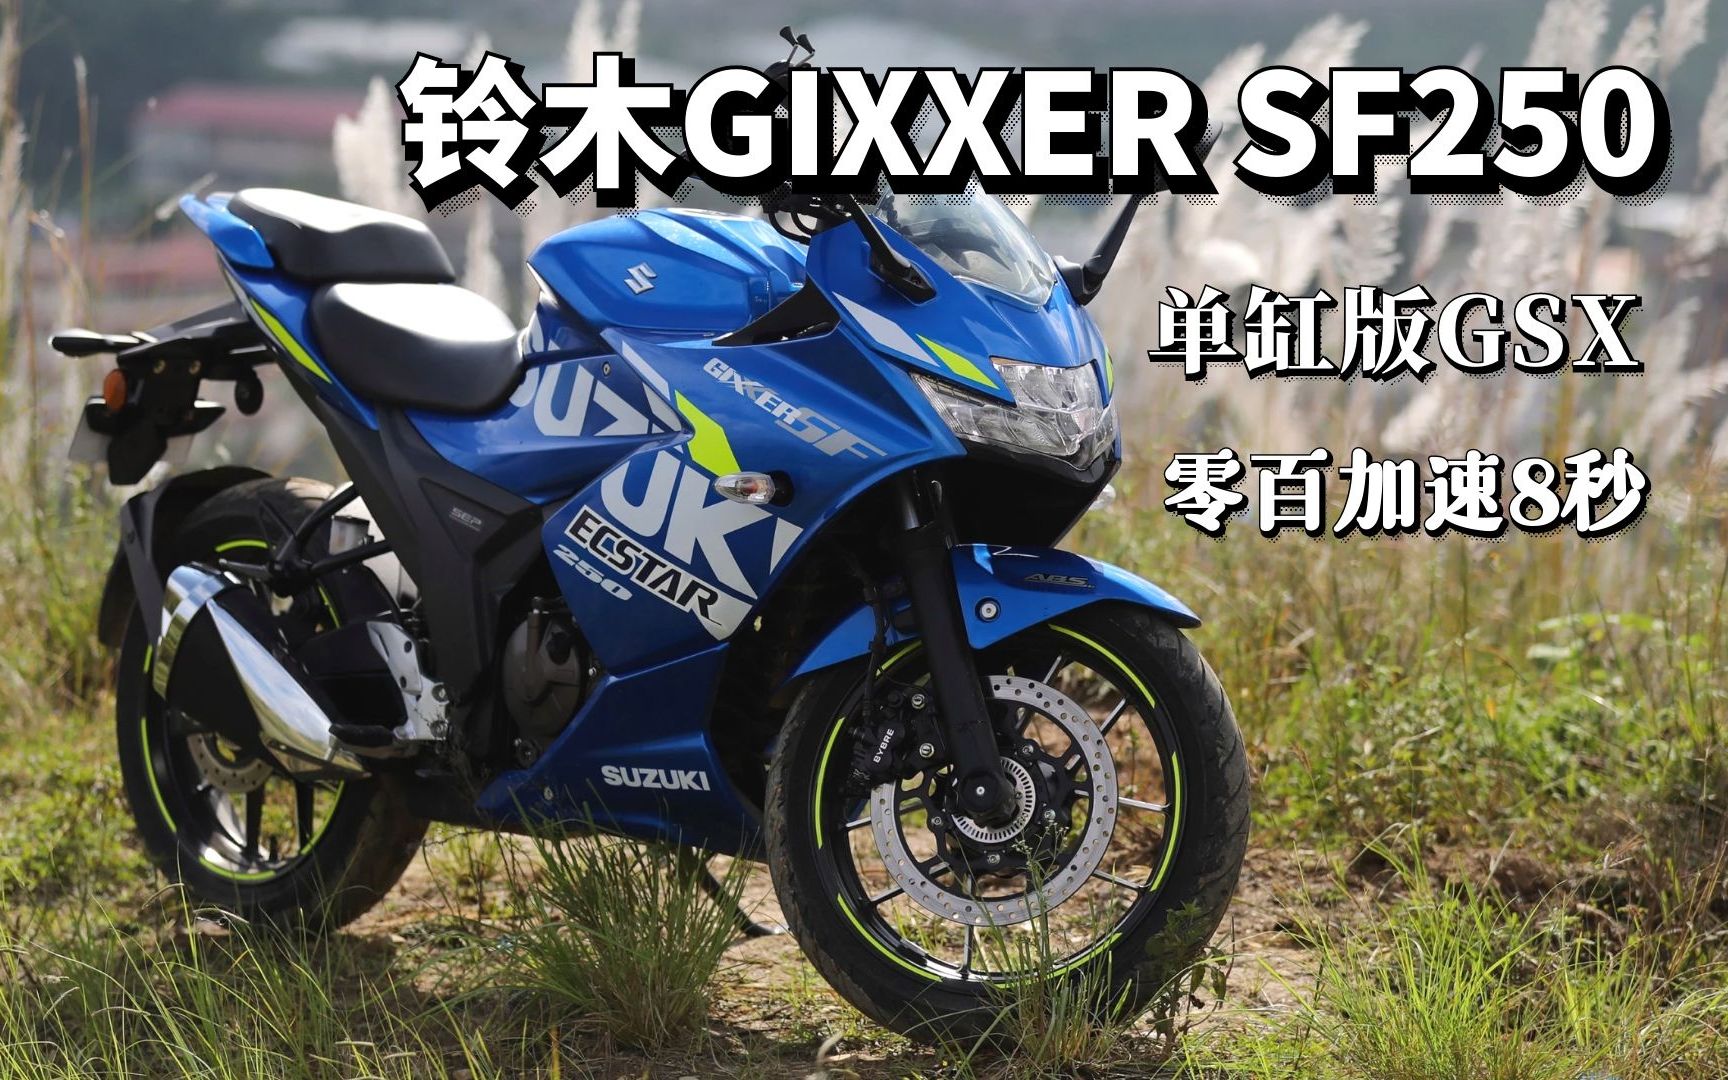 还在期待铃木GSX250R新款吗？不如先看看GIXXER SF250！更快更猛